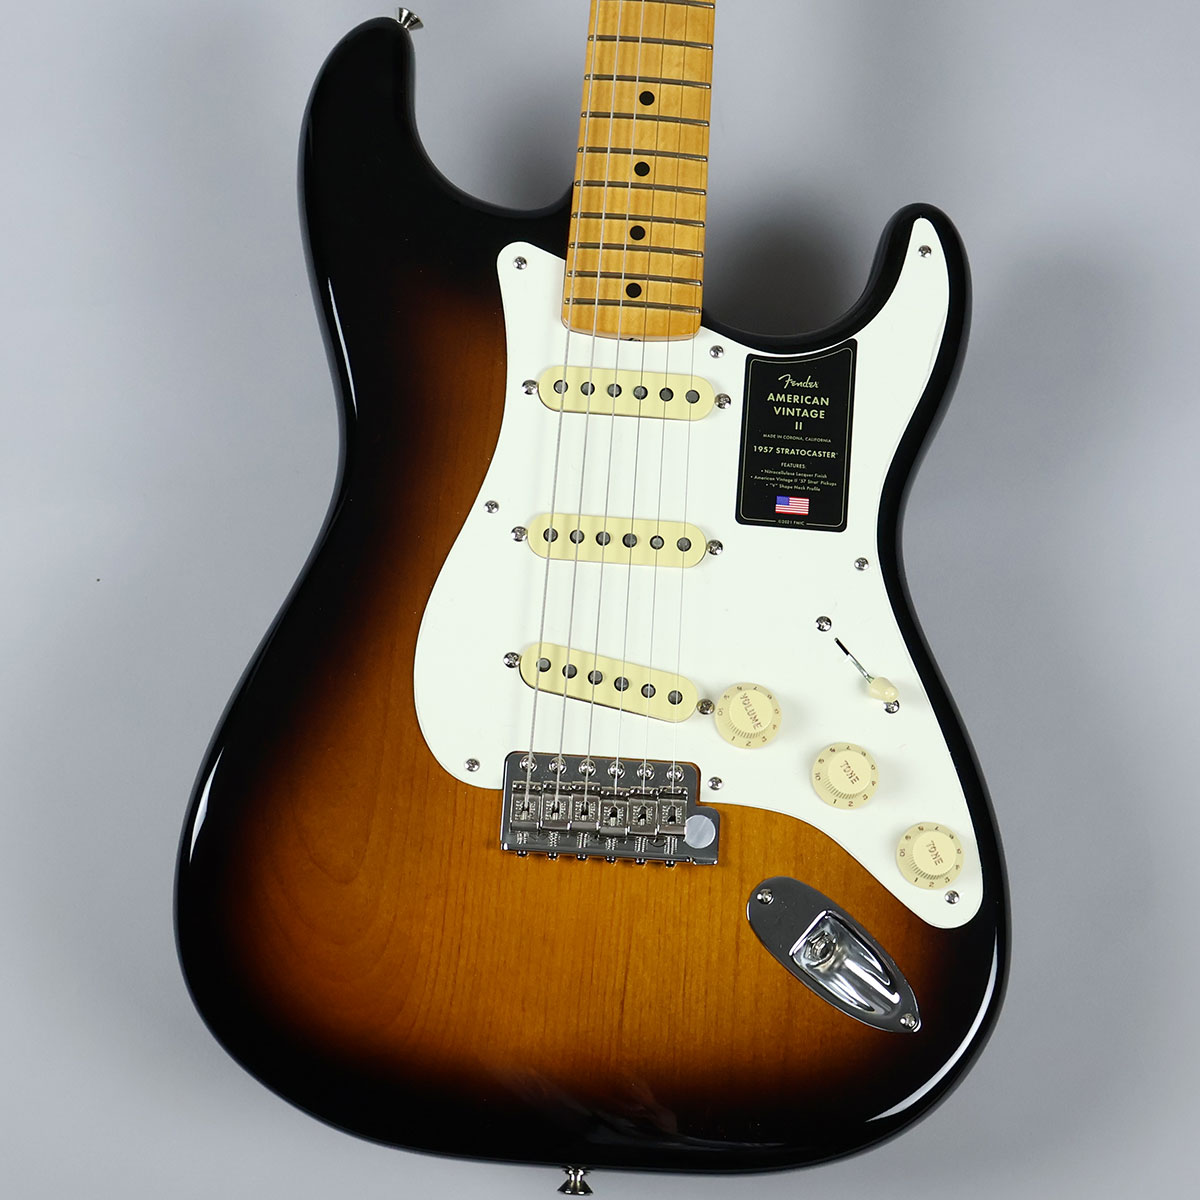 Fender American Vintage II 1957 Stratocaster 2-color Sunburst ...